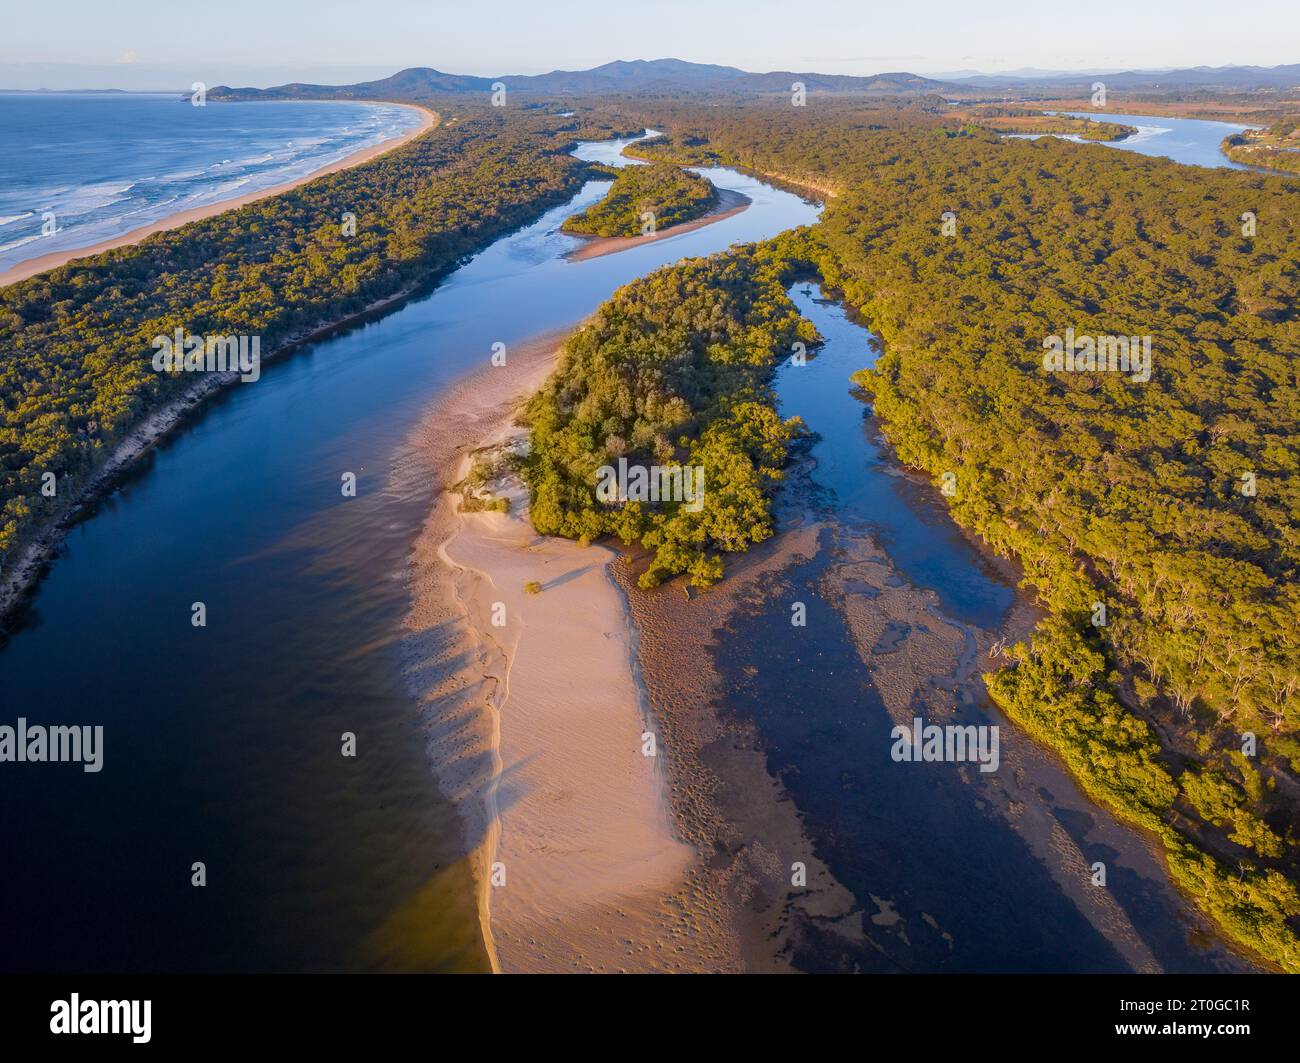 Vista aérea de islas en un sistema fluvial costero que corre a lo largo de una costa vegetada en Nambucca Heads en Nueva Gales del Sur, Australia Foto de stock